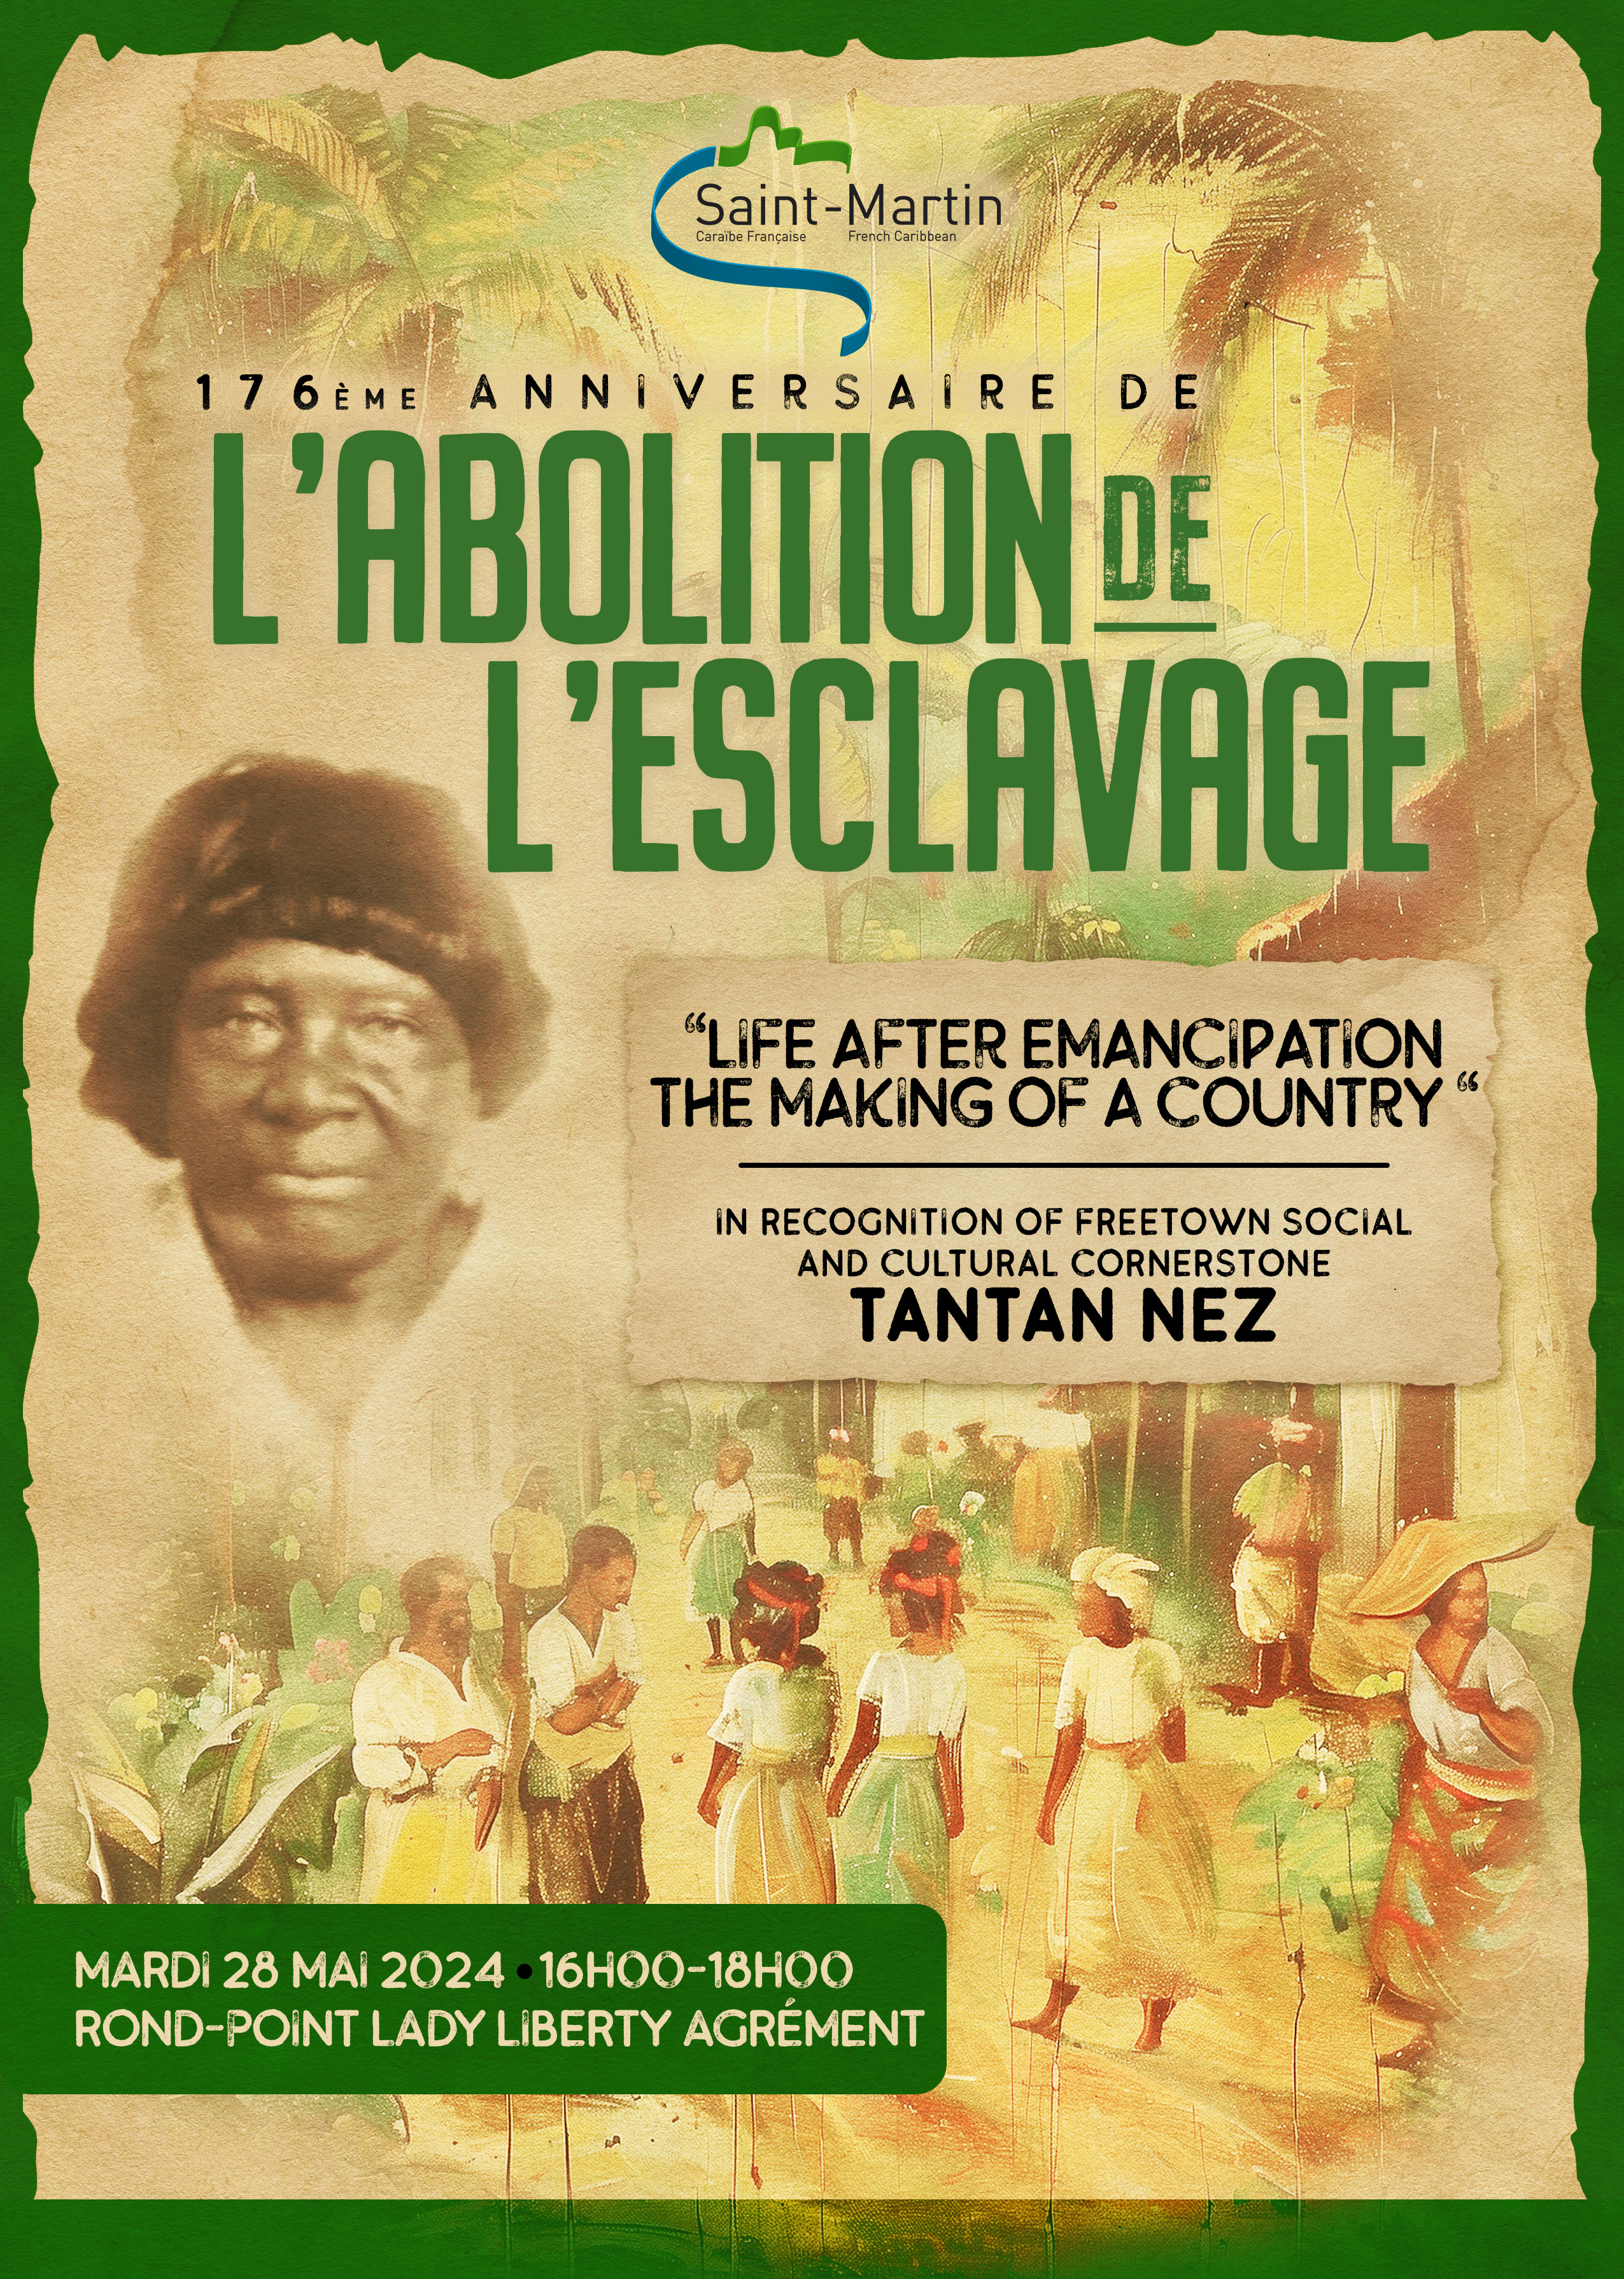 Communiqu de Presse: Mardi 28 mai 2024 - Commmoration du 176e anniversaire de l'abolition de l'esclavage